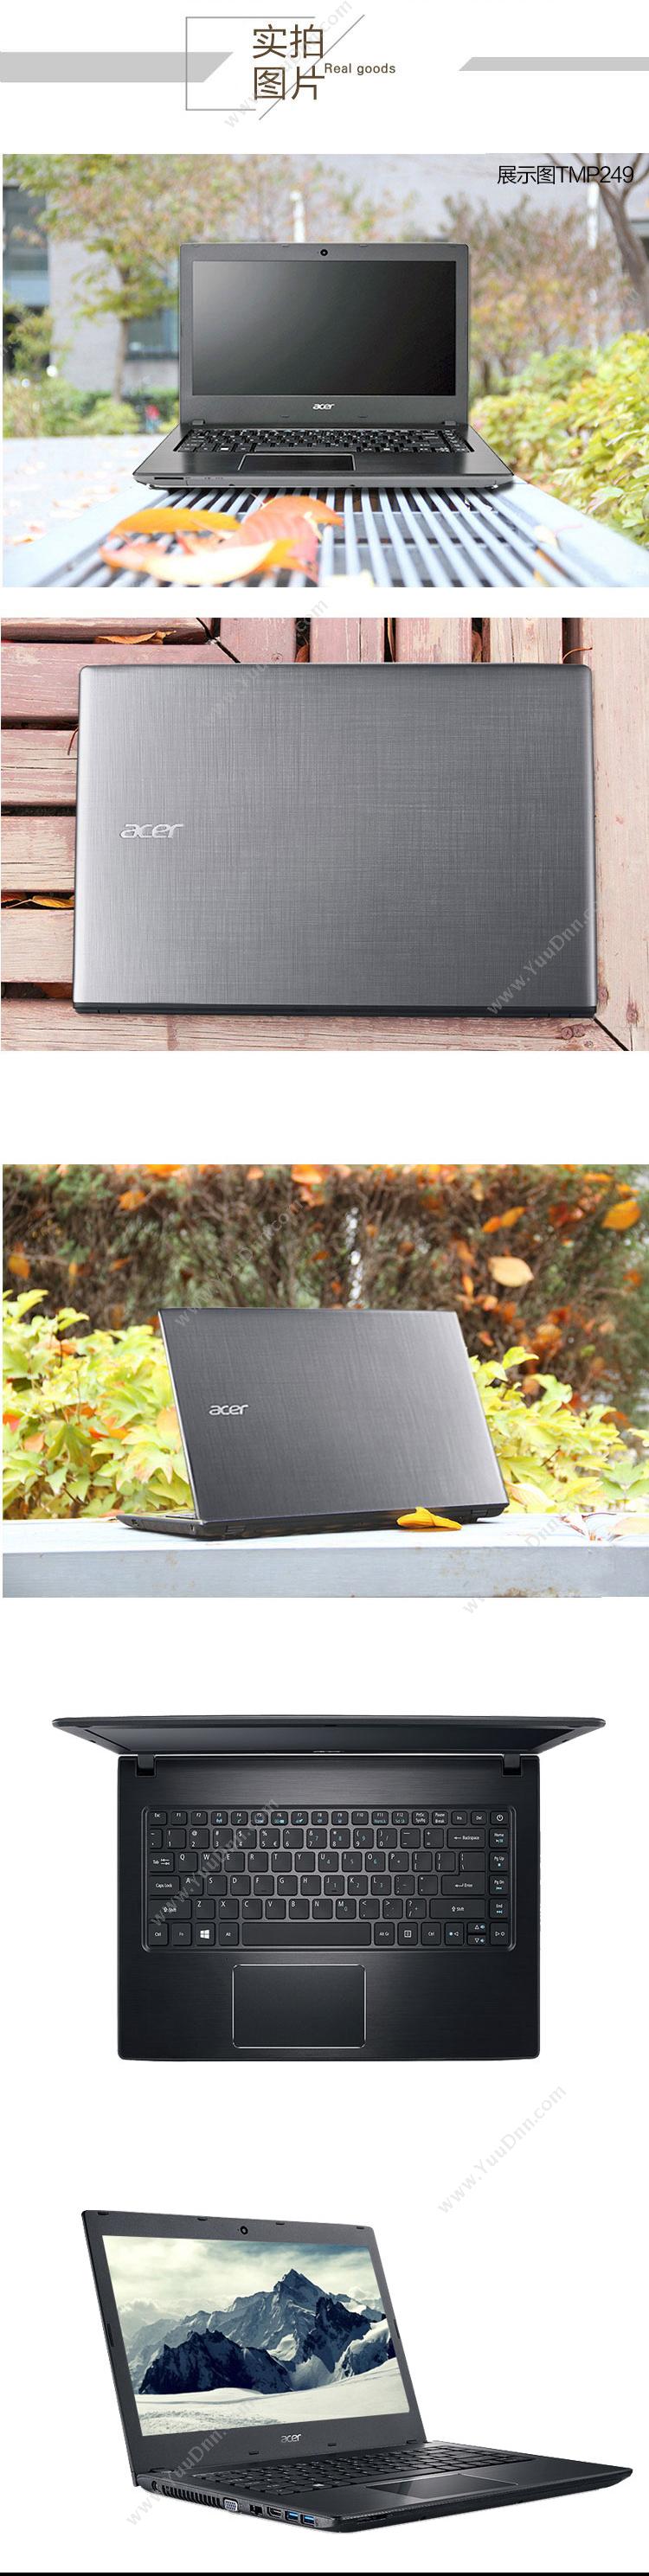 宏碁 Acer TravelMate P249-7164 便携式计算机 I5-6200U   /集成/4G/1T/2G独立/DVDRW/LED/14英寸/一年保修/W7H 平板电脑